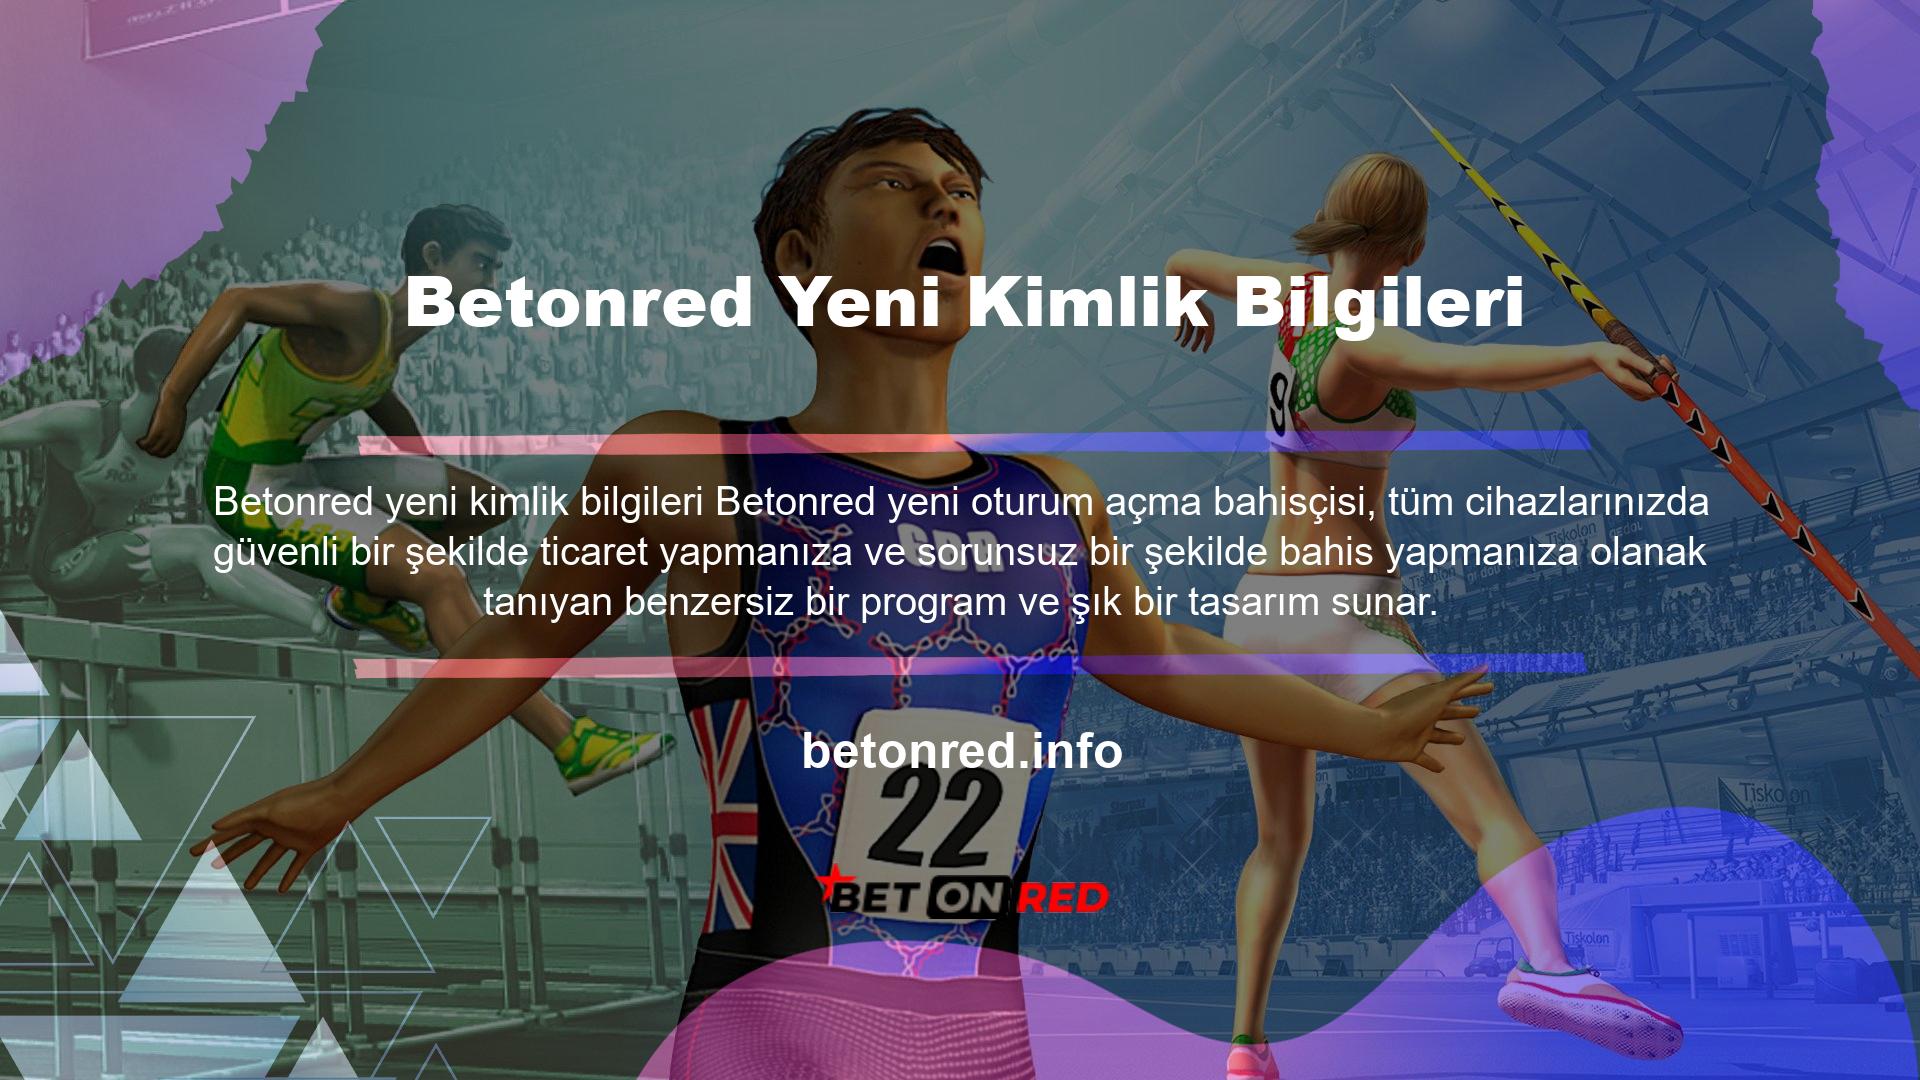 Türkiye'deki casino sitelerinin yasa dışı olması nedeniyle, Betonred sürekli olarak adres değiştirmekte ve farklı bir adres altında faaliyet göstermektedir